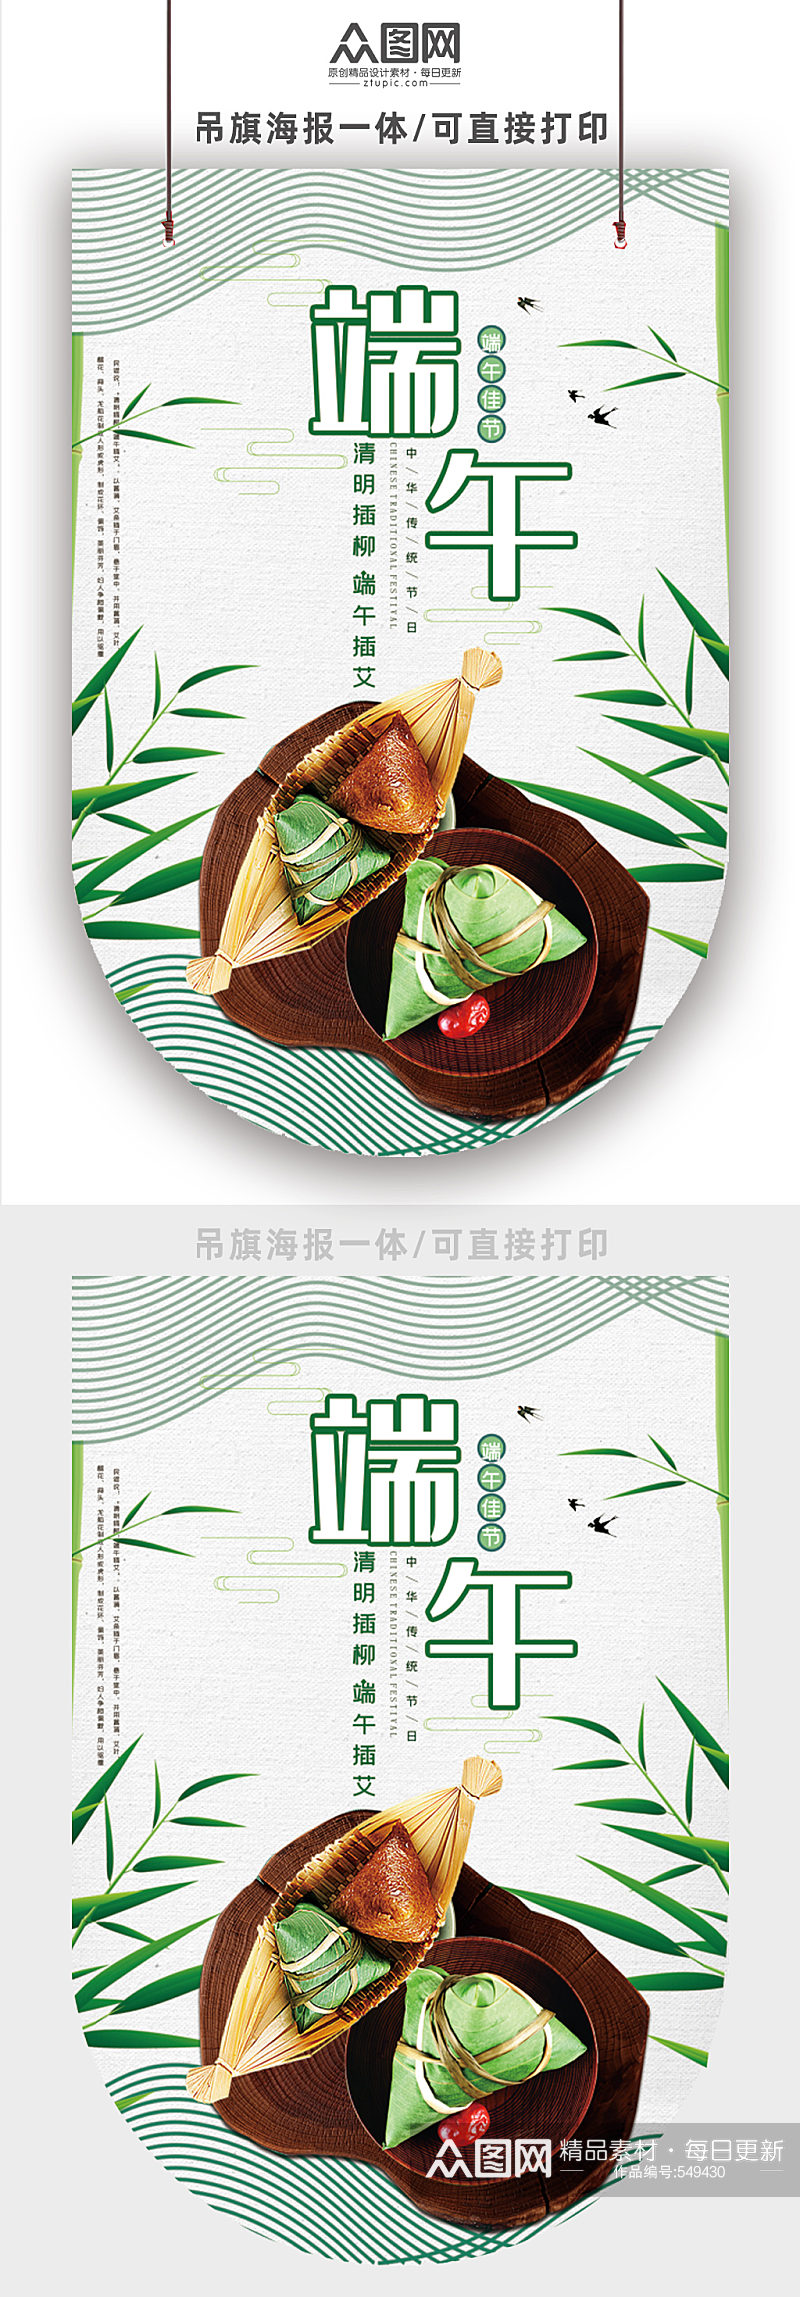 端午佳节传统美食粽子素材